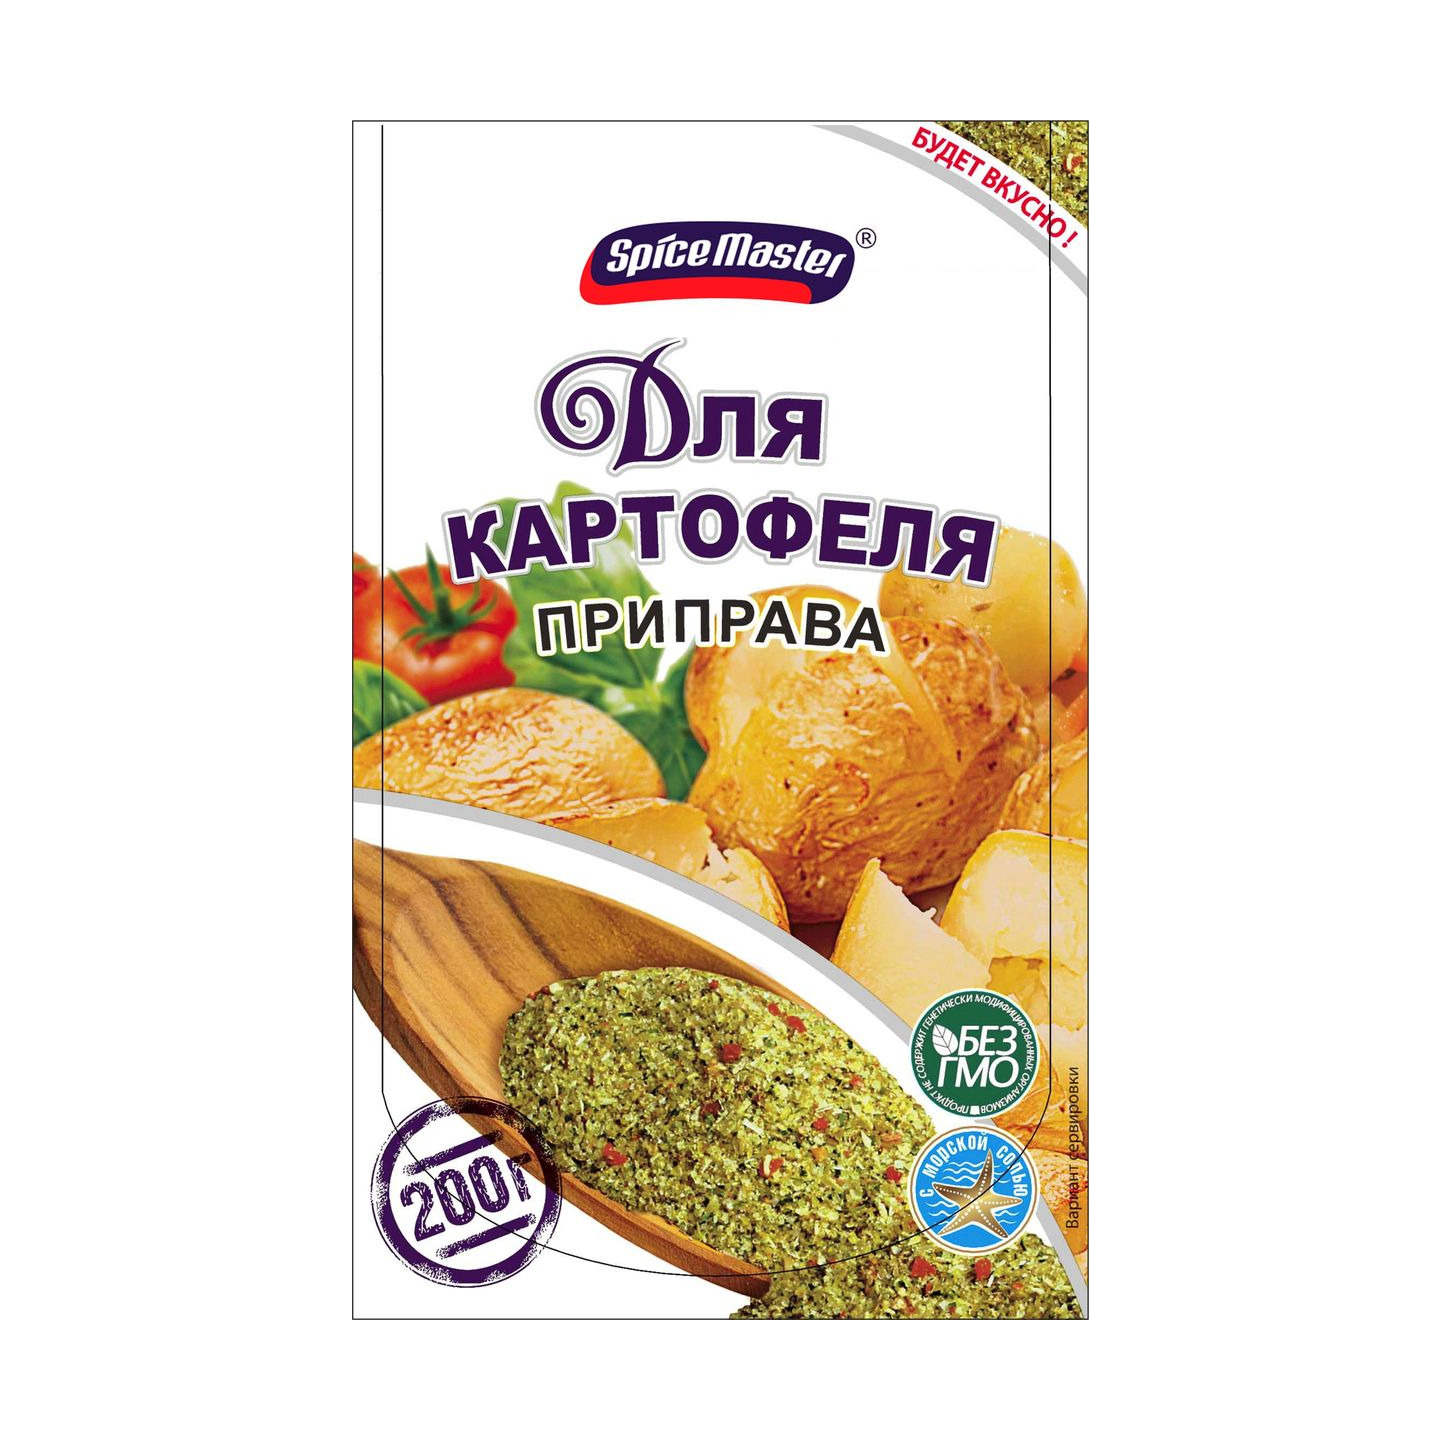 Приправа Spice Master для картофеля 200 г приправа русский аппетит 15 г для картофеля